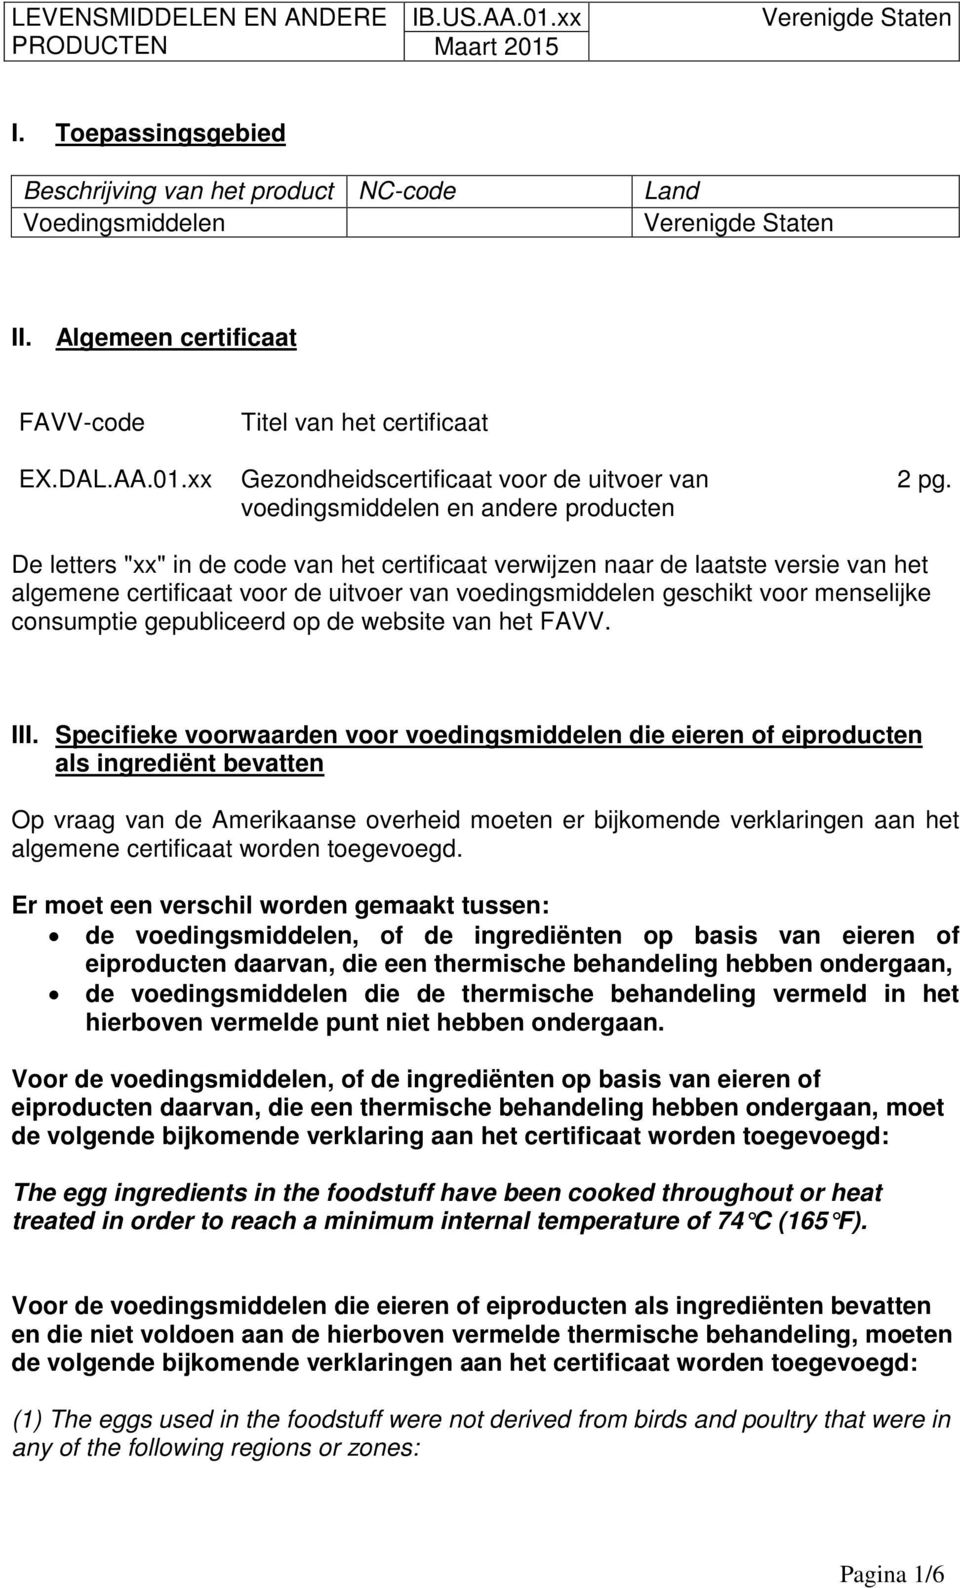 De letters "xx" in de code van het certificaat verwijzen naar de laatste versie van het algemene certificaat voor de uitvoer van voedingsmiddelen geschikt voor menselijke consumptie gepubliceerd op